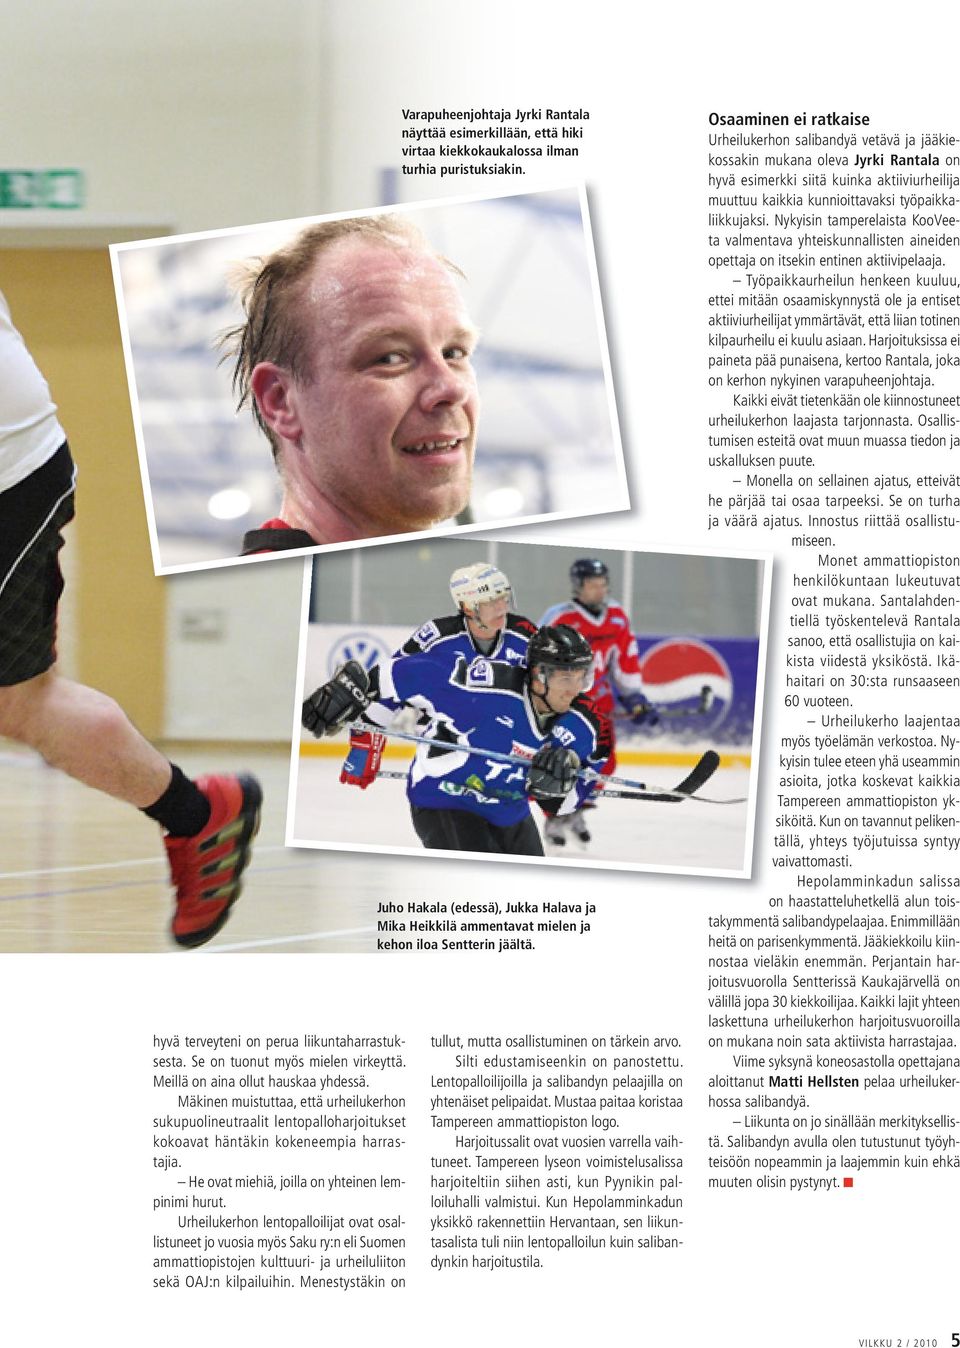 Urheilukerhon lentopalloilijat ovat osallistuneet jo vuosia myös Saku ry:n eli Suomen ammattiopistojen kulttuuri- ja urheiluliiton sekä OAJ:n kilpailuihin.